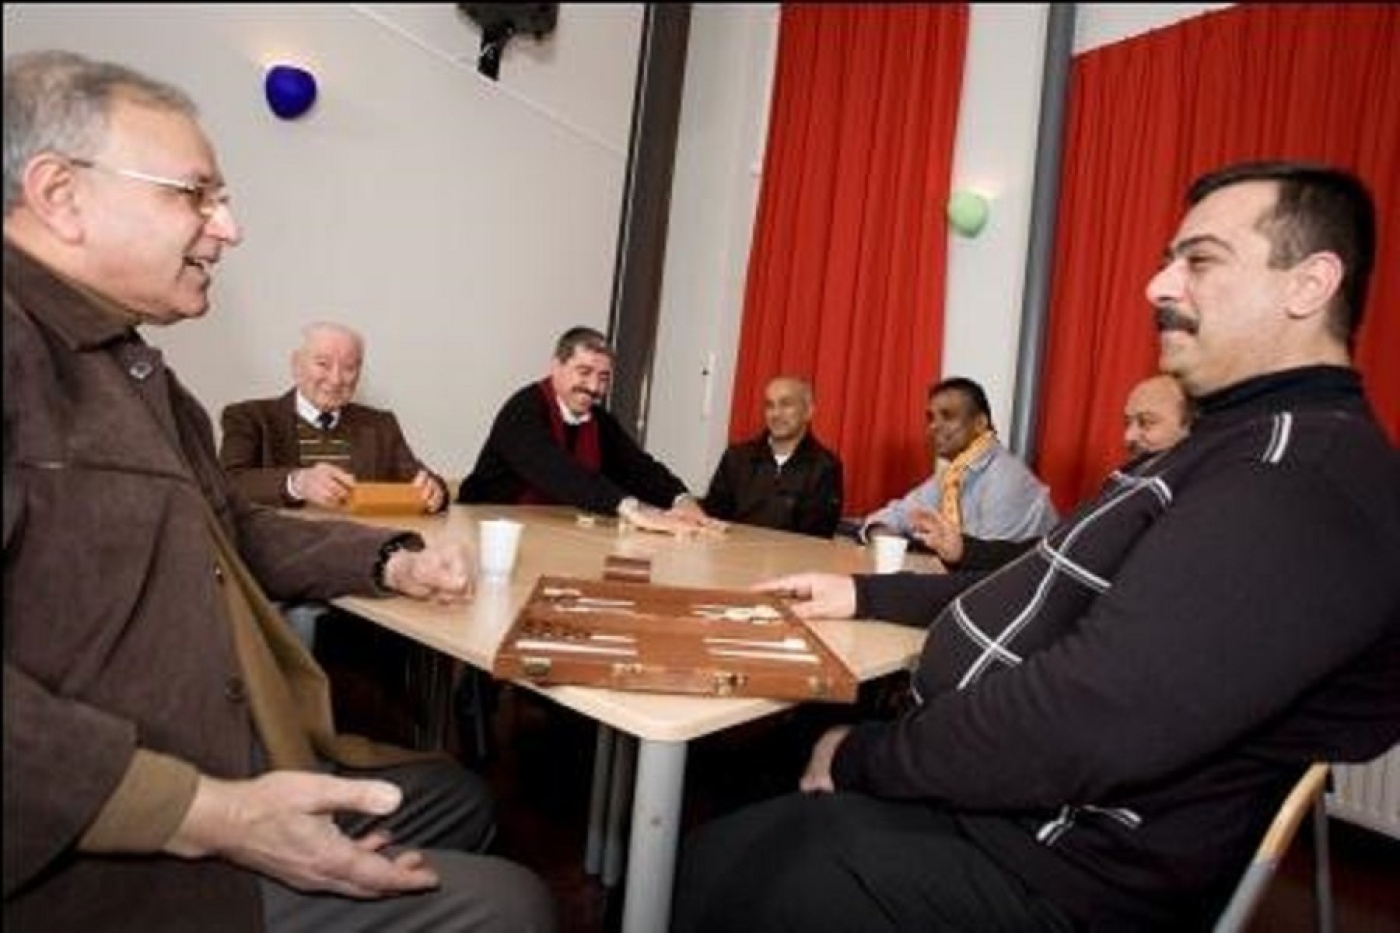 Vacature Sociaal werker met aandachtsgebied senioren met een migratie achtergrond in Alphen aan den Rijn.